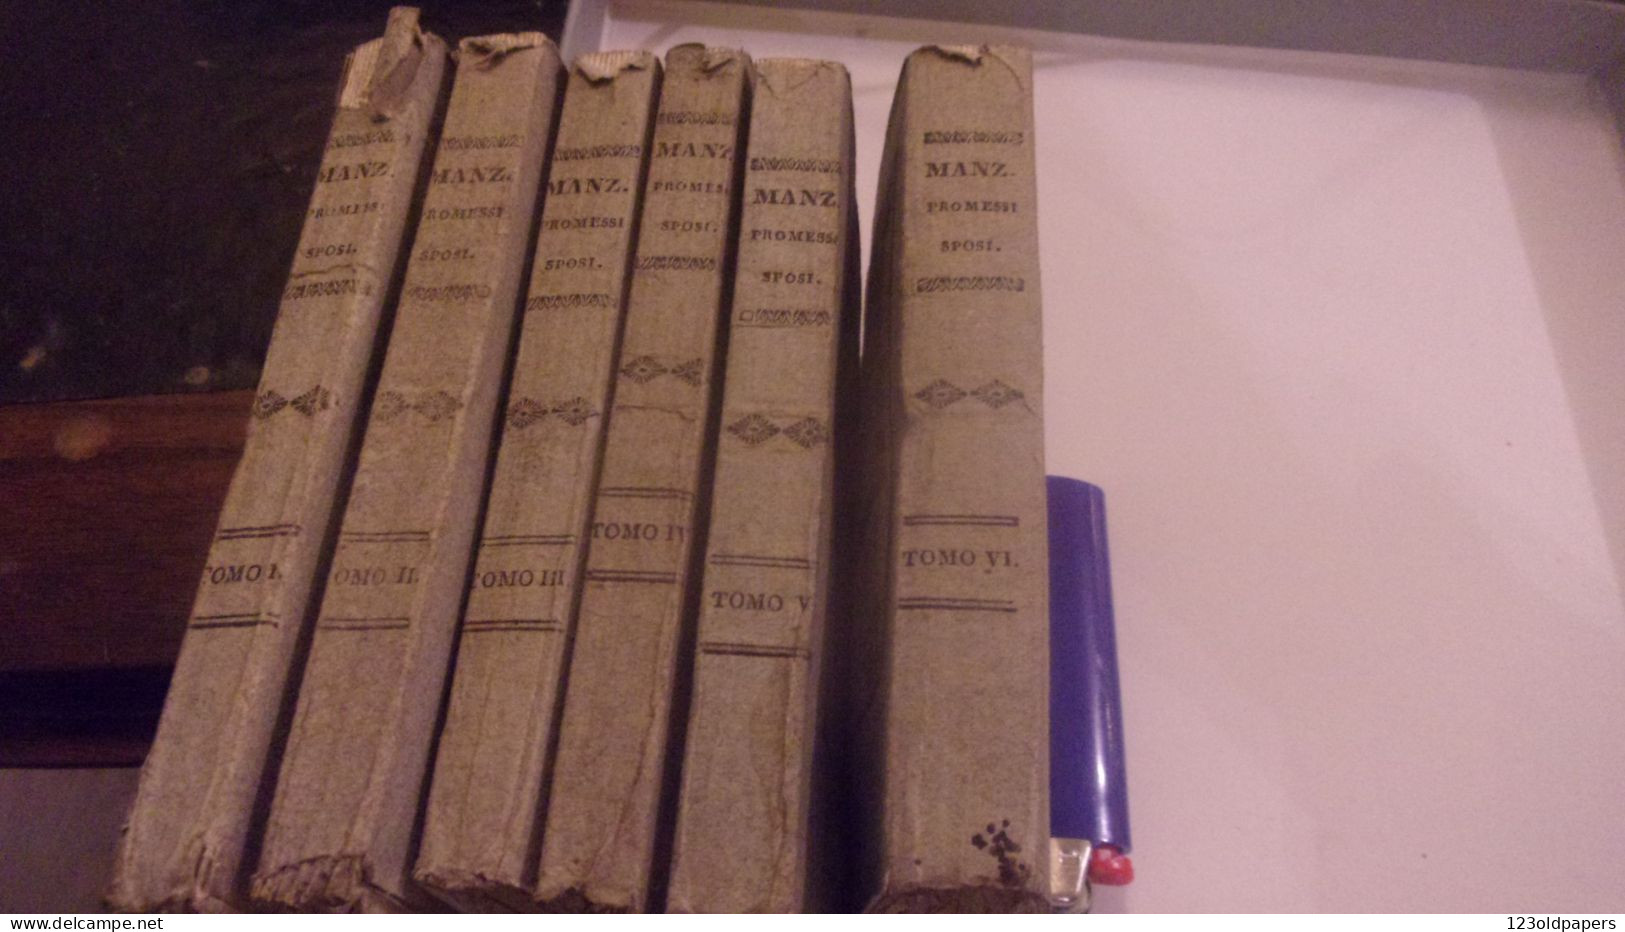 1836 6 VOL COMPLET I PROMESSI SPOSI DI ALES MANZONI  NAPOLI GABINETTO LETTERARIO - Old Books